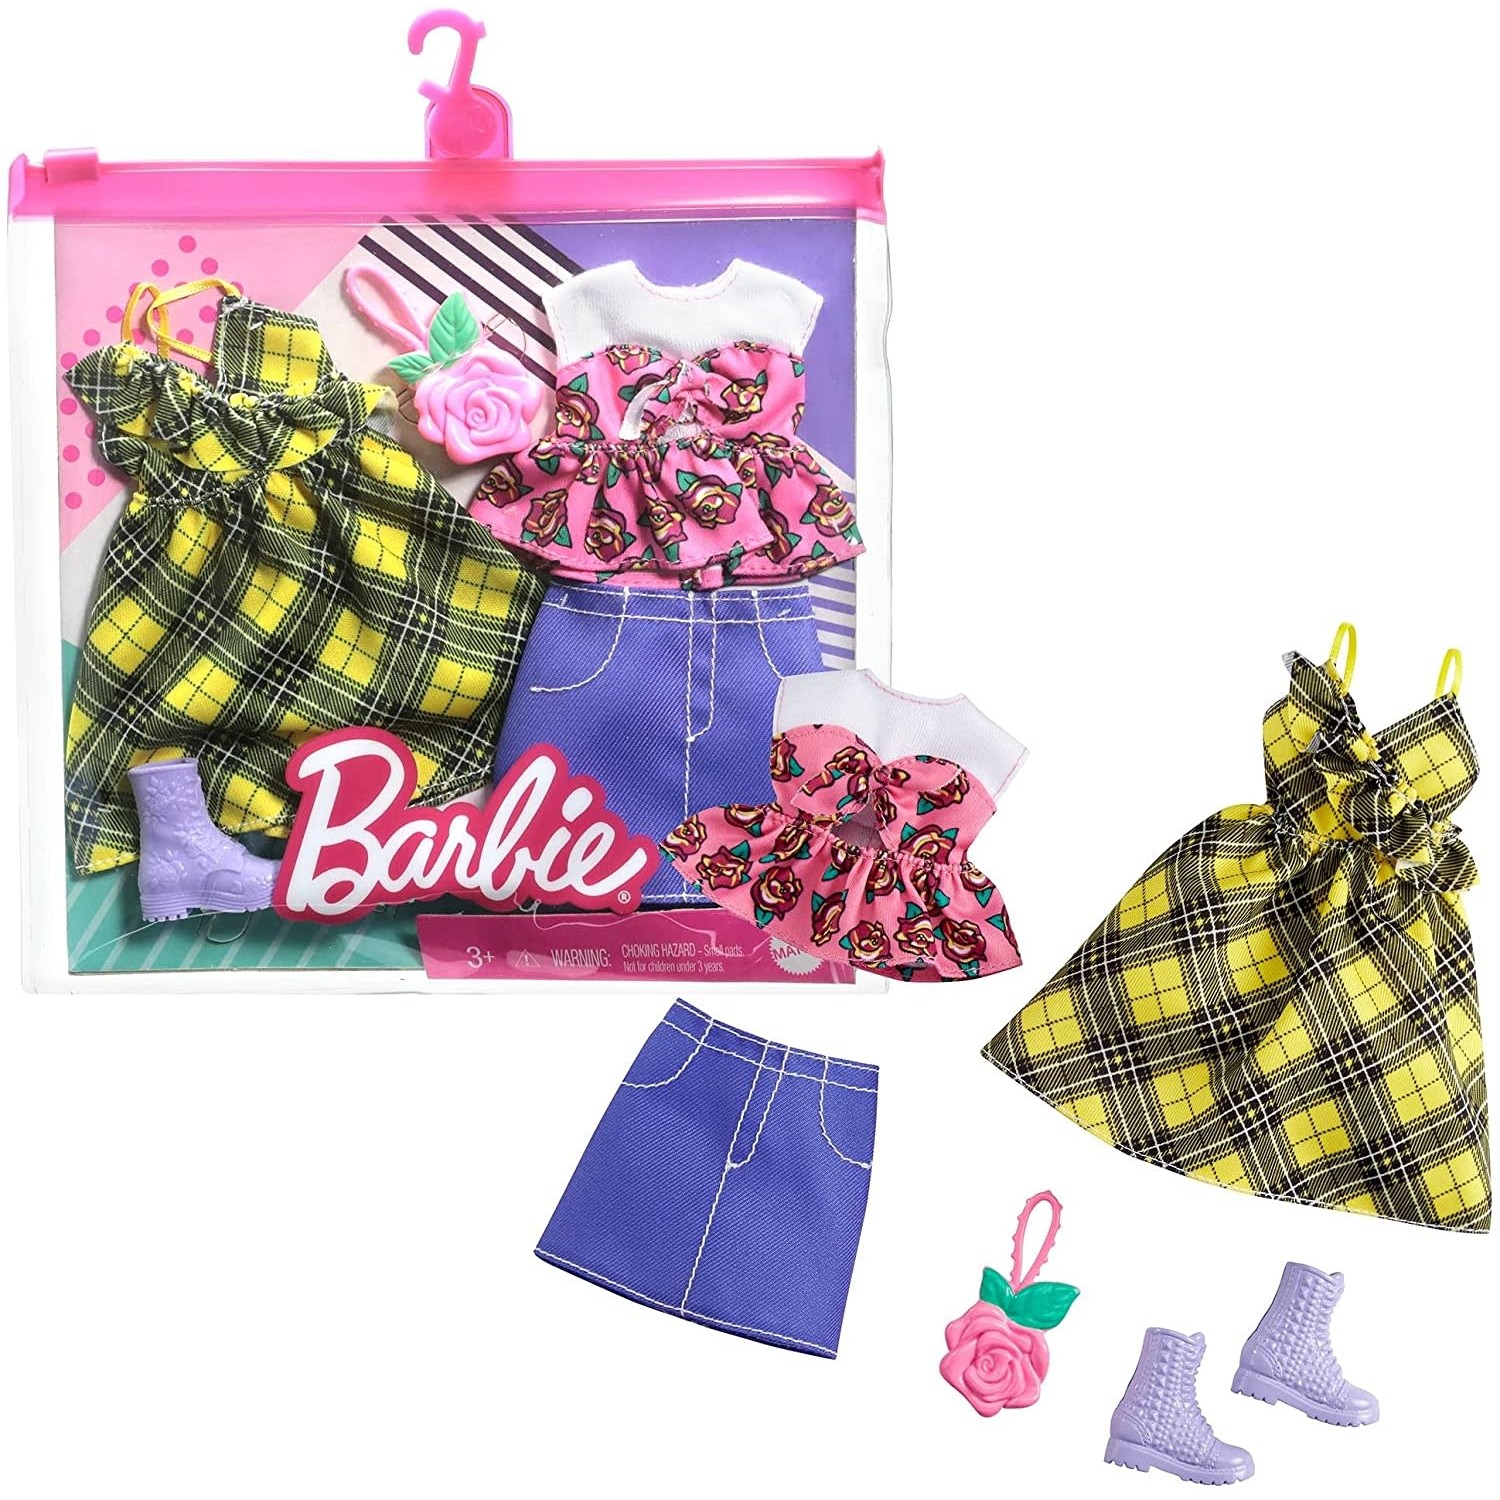 Barbie Complete Looks Assortment - Mud Puddle Toys